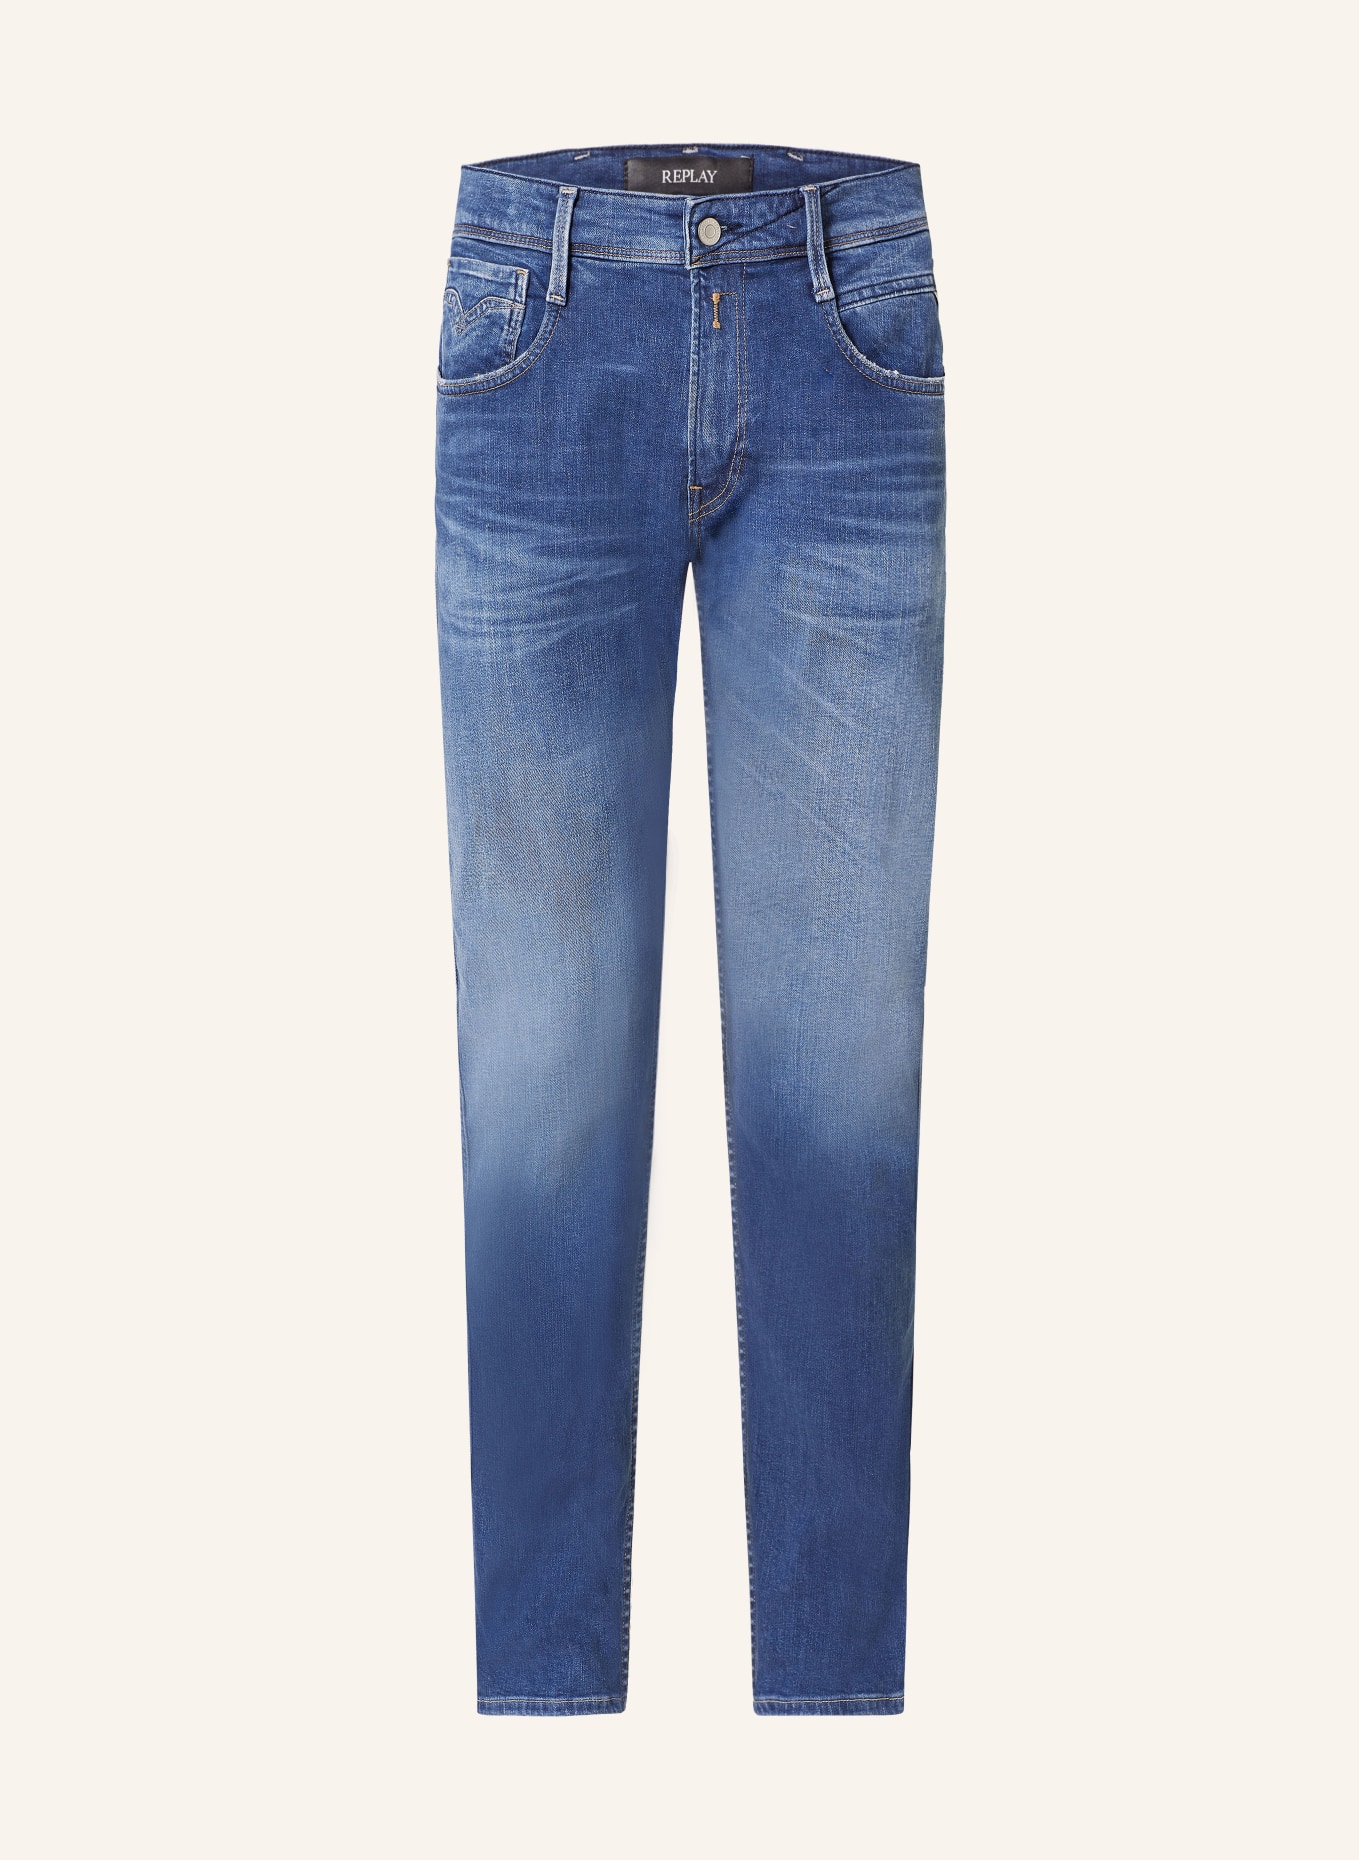 REPLAY Jeans Slim Fit, Farbe: 007 DARK BLUE (Bild 1)